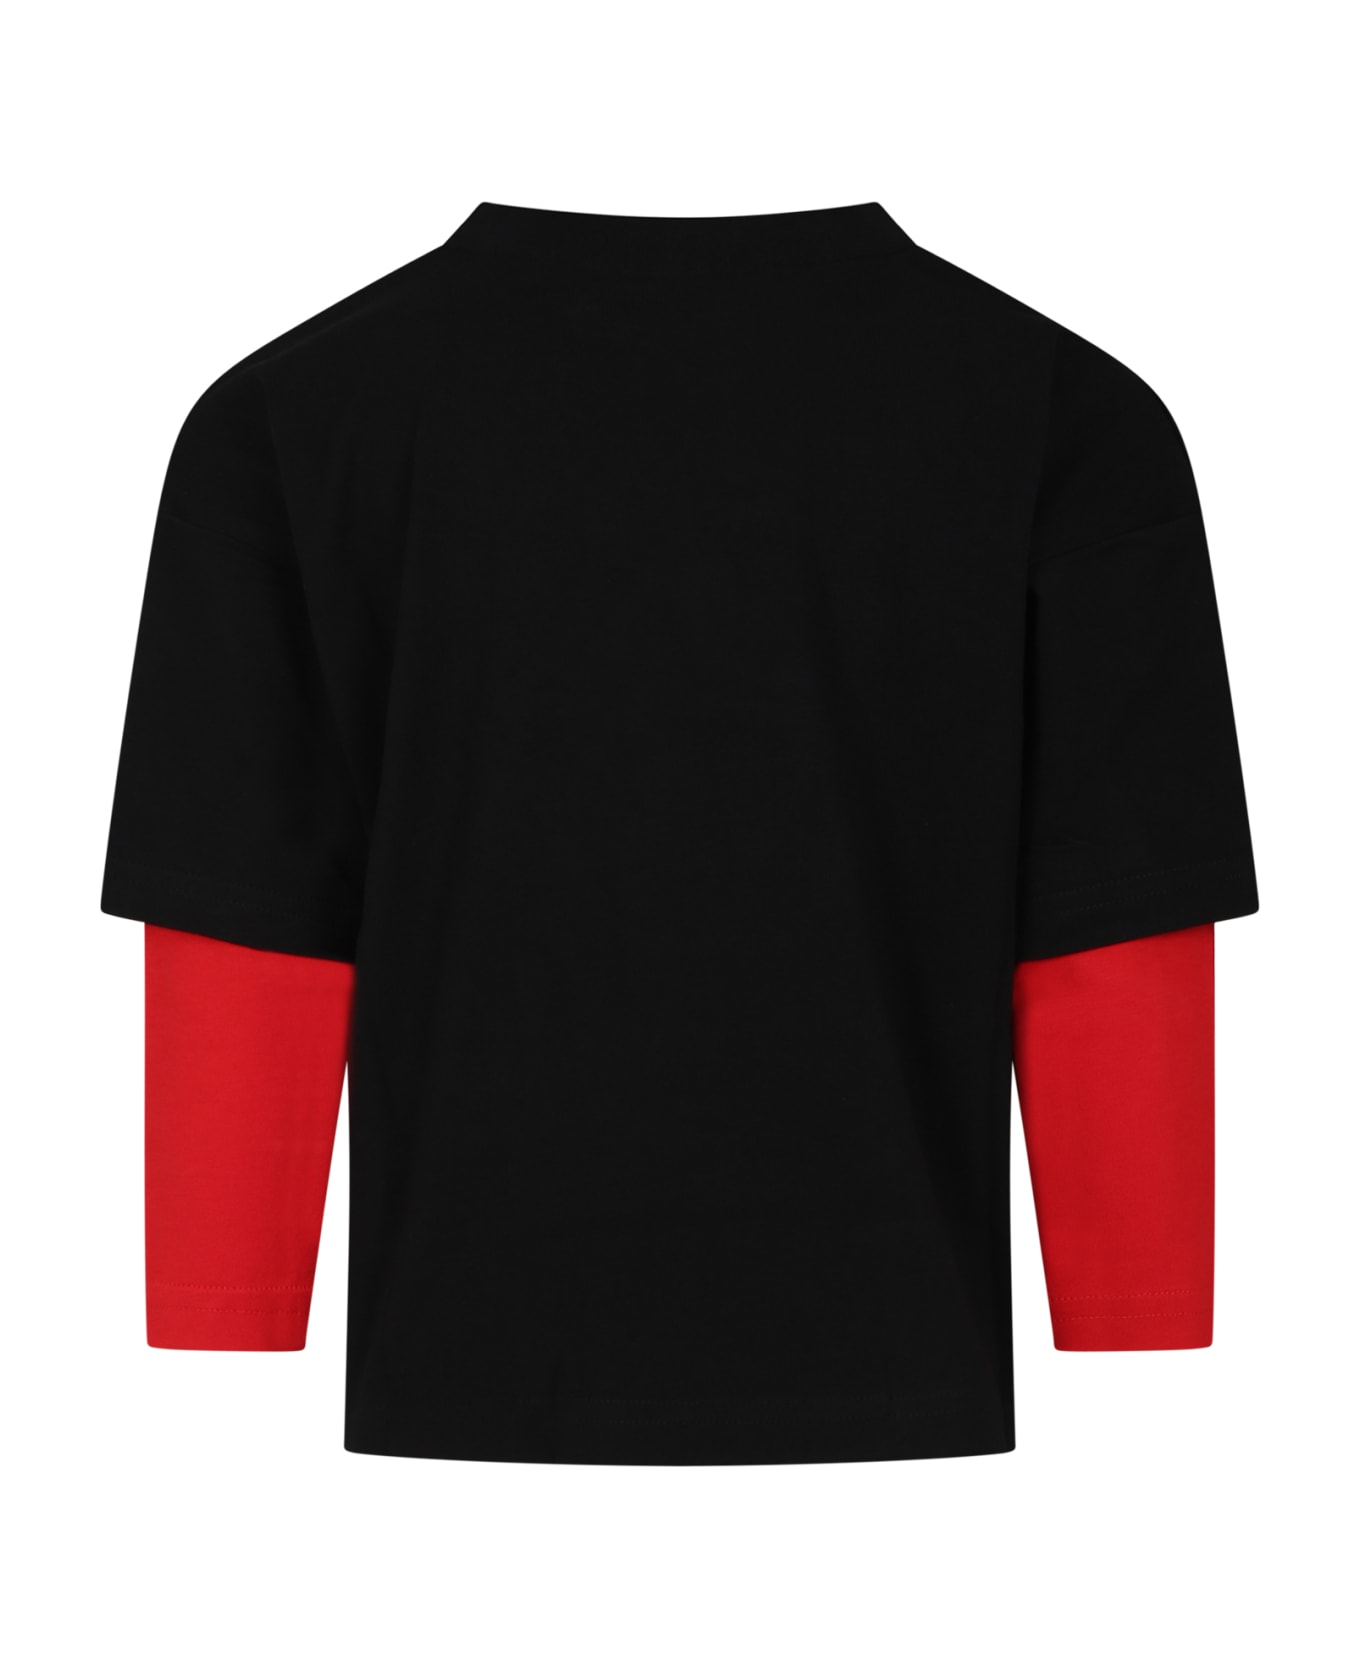 Hugo Boss Black T-shirt For Children With Logo - Black